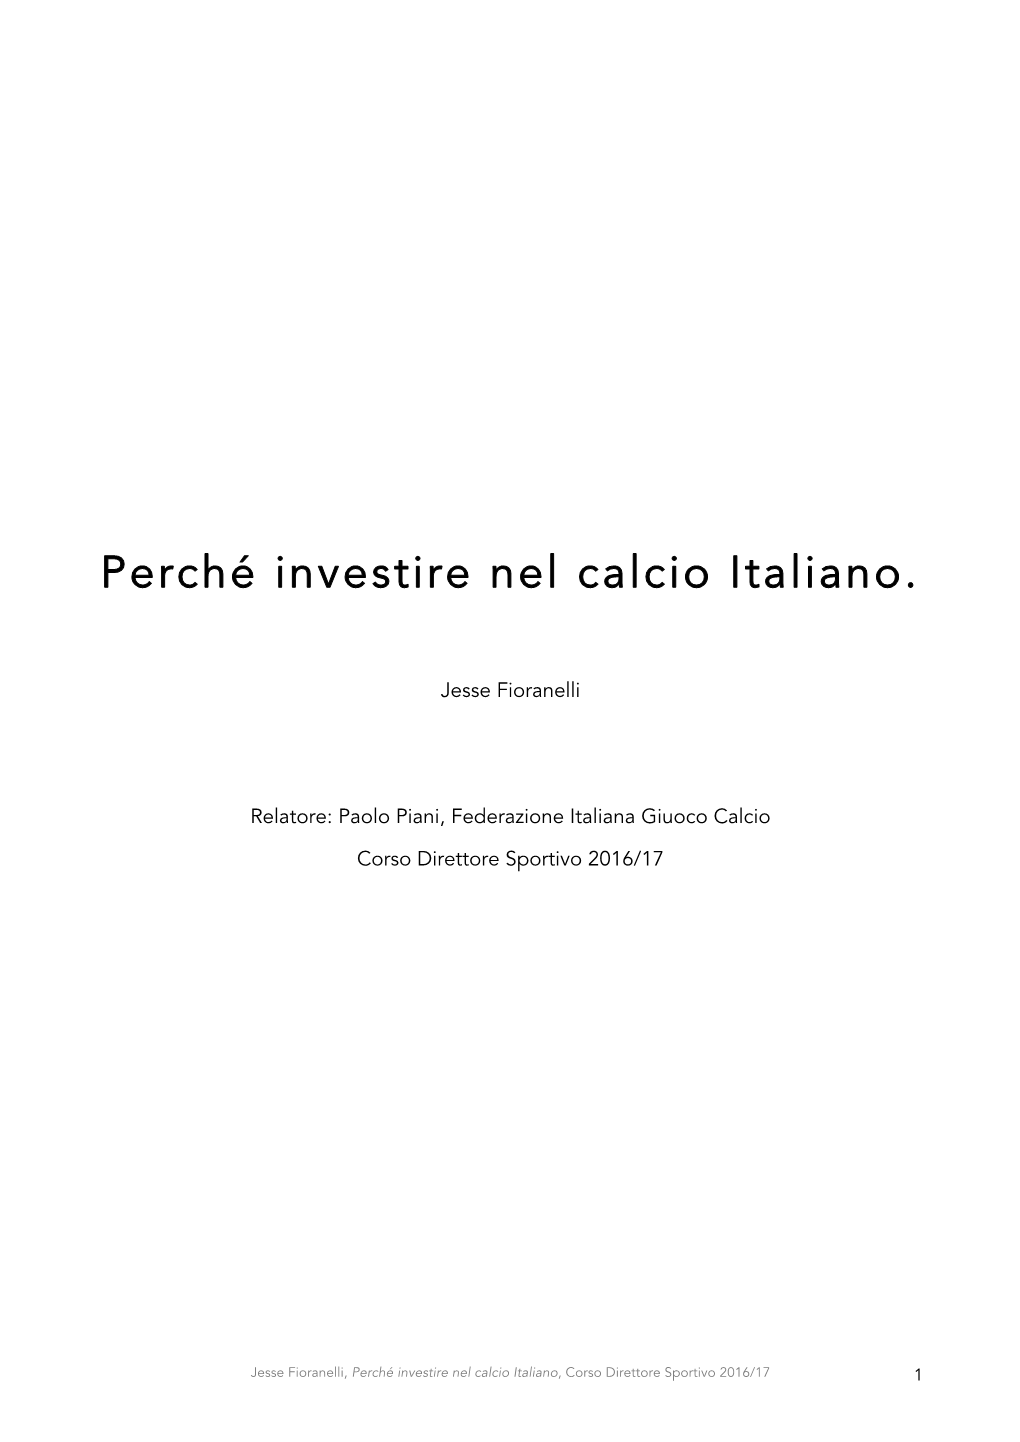 Jesse Fioranelli – Perché Investire Nel Calcio Italiano